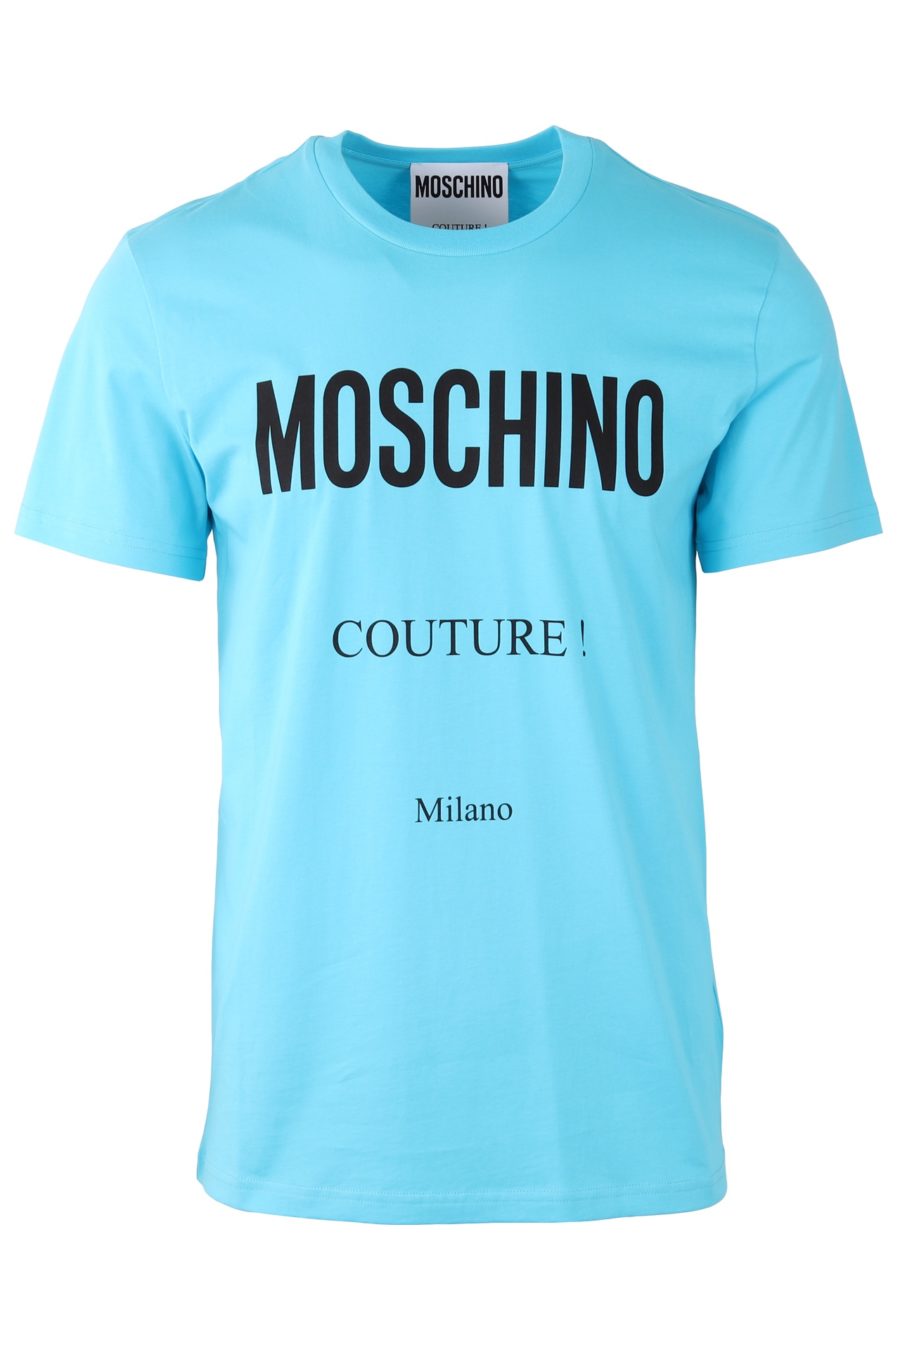 Moschino Couture T-shirt azul clara com logótipo preto - 43279f8ab56a3b98b9b1ae4ff95d3f0b5470c4c5